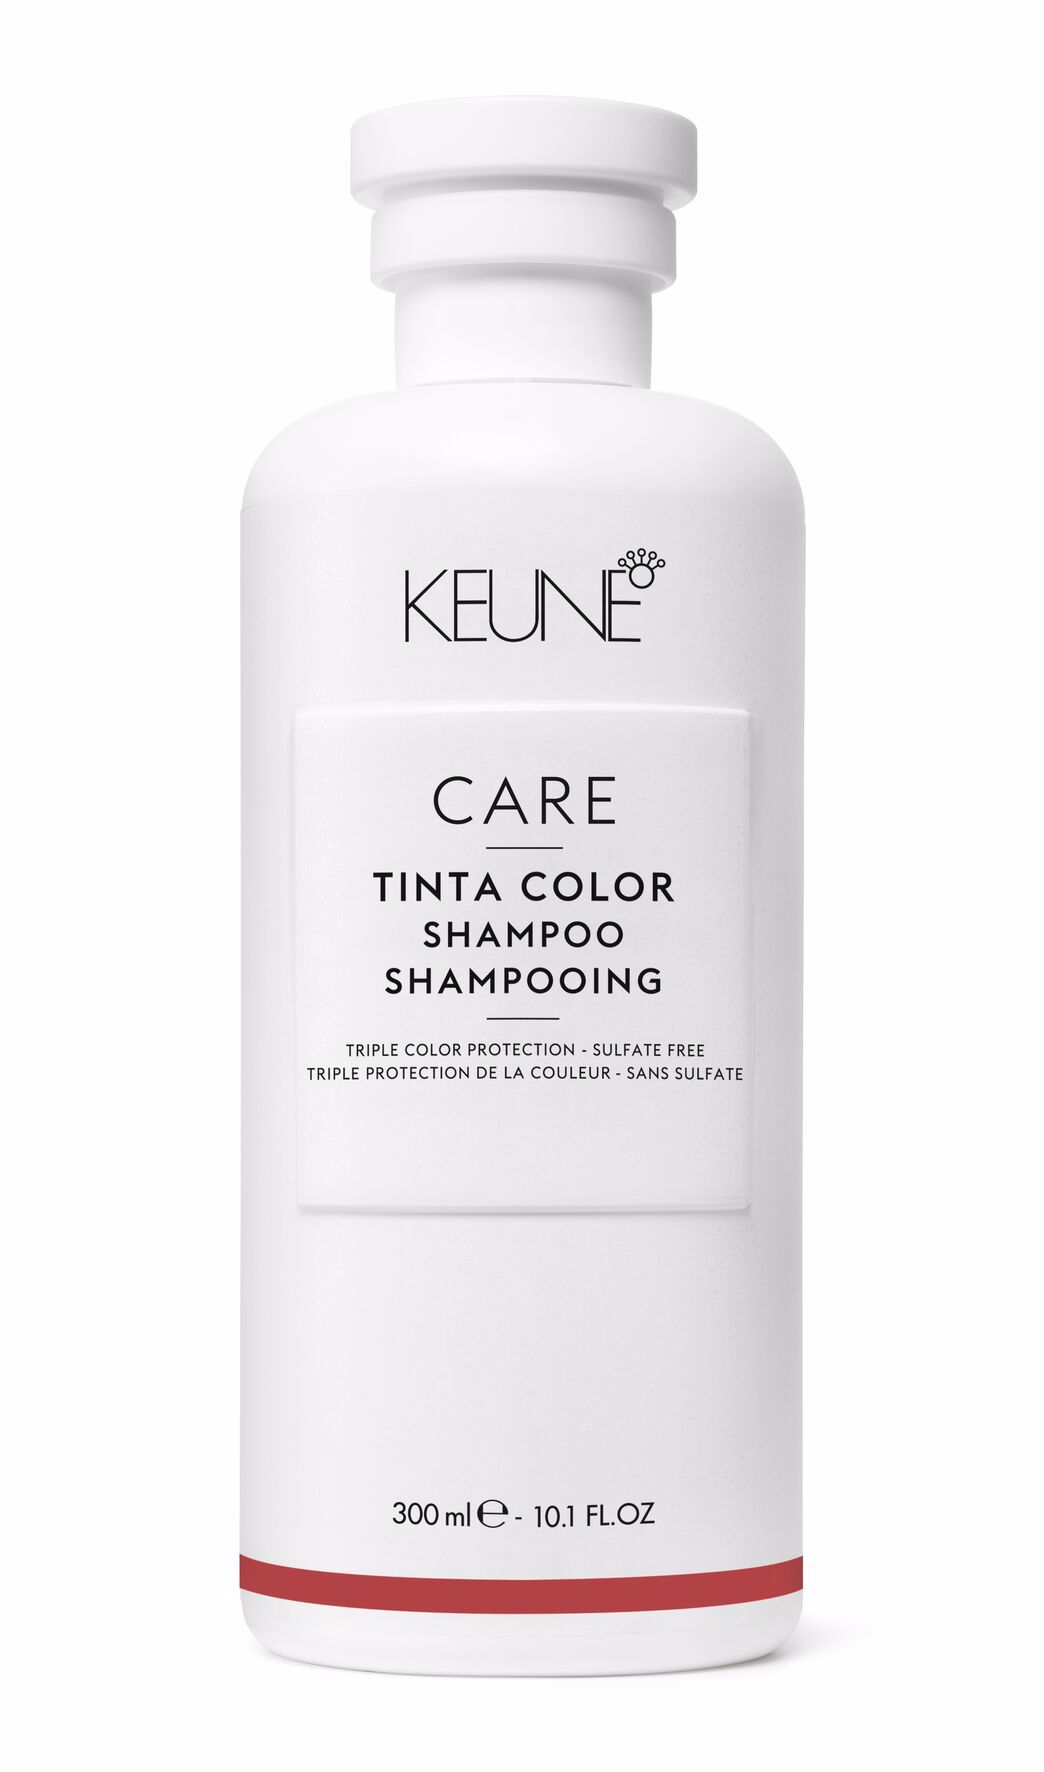 Tinta Color Care Shampoo - Schonende Reinigung für coloriertes Haar | Anti Frizz & mehr Volumen | Bewahrt die Salonfarbe frisch | Entdecke professionelle Haarpflege.